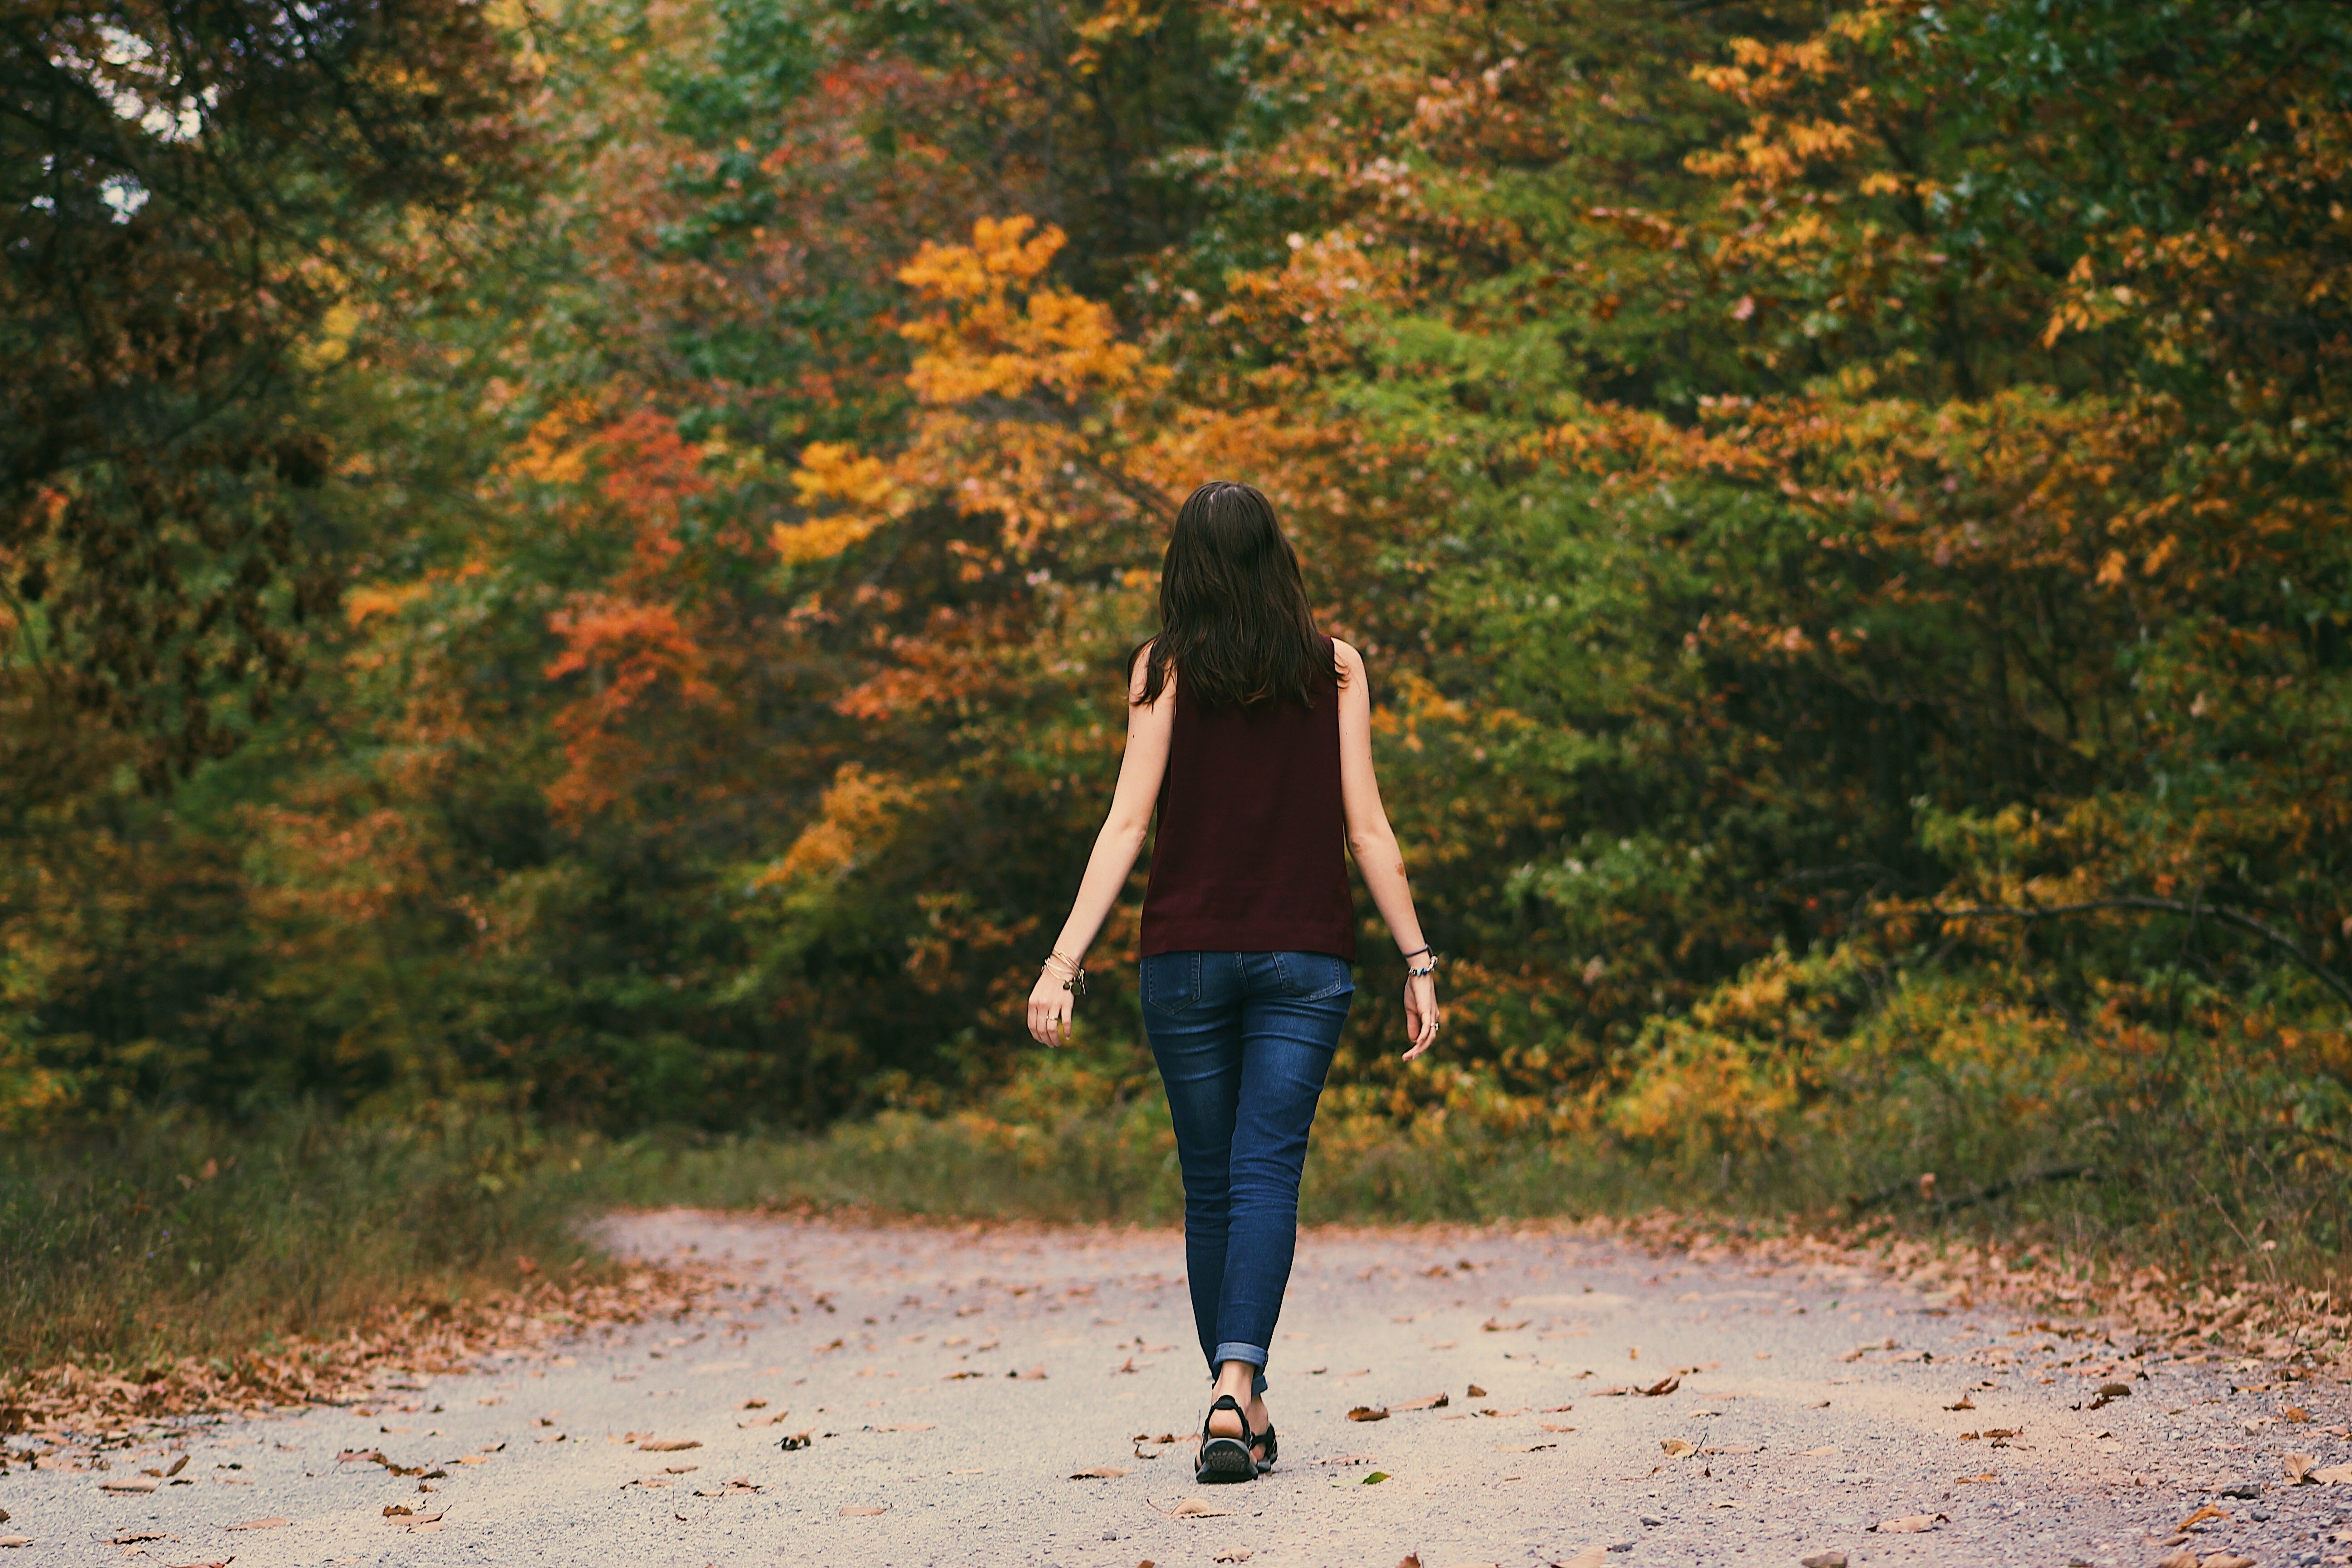 Una joven mujer camina por una via de tierra. | Foto: Pexels